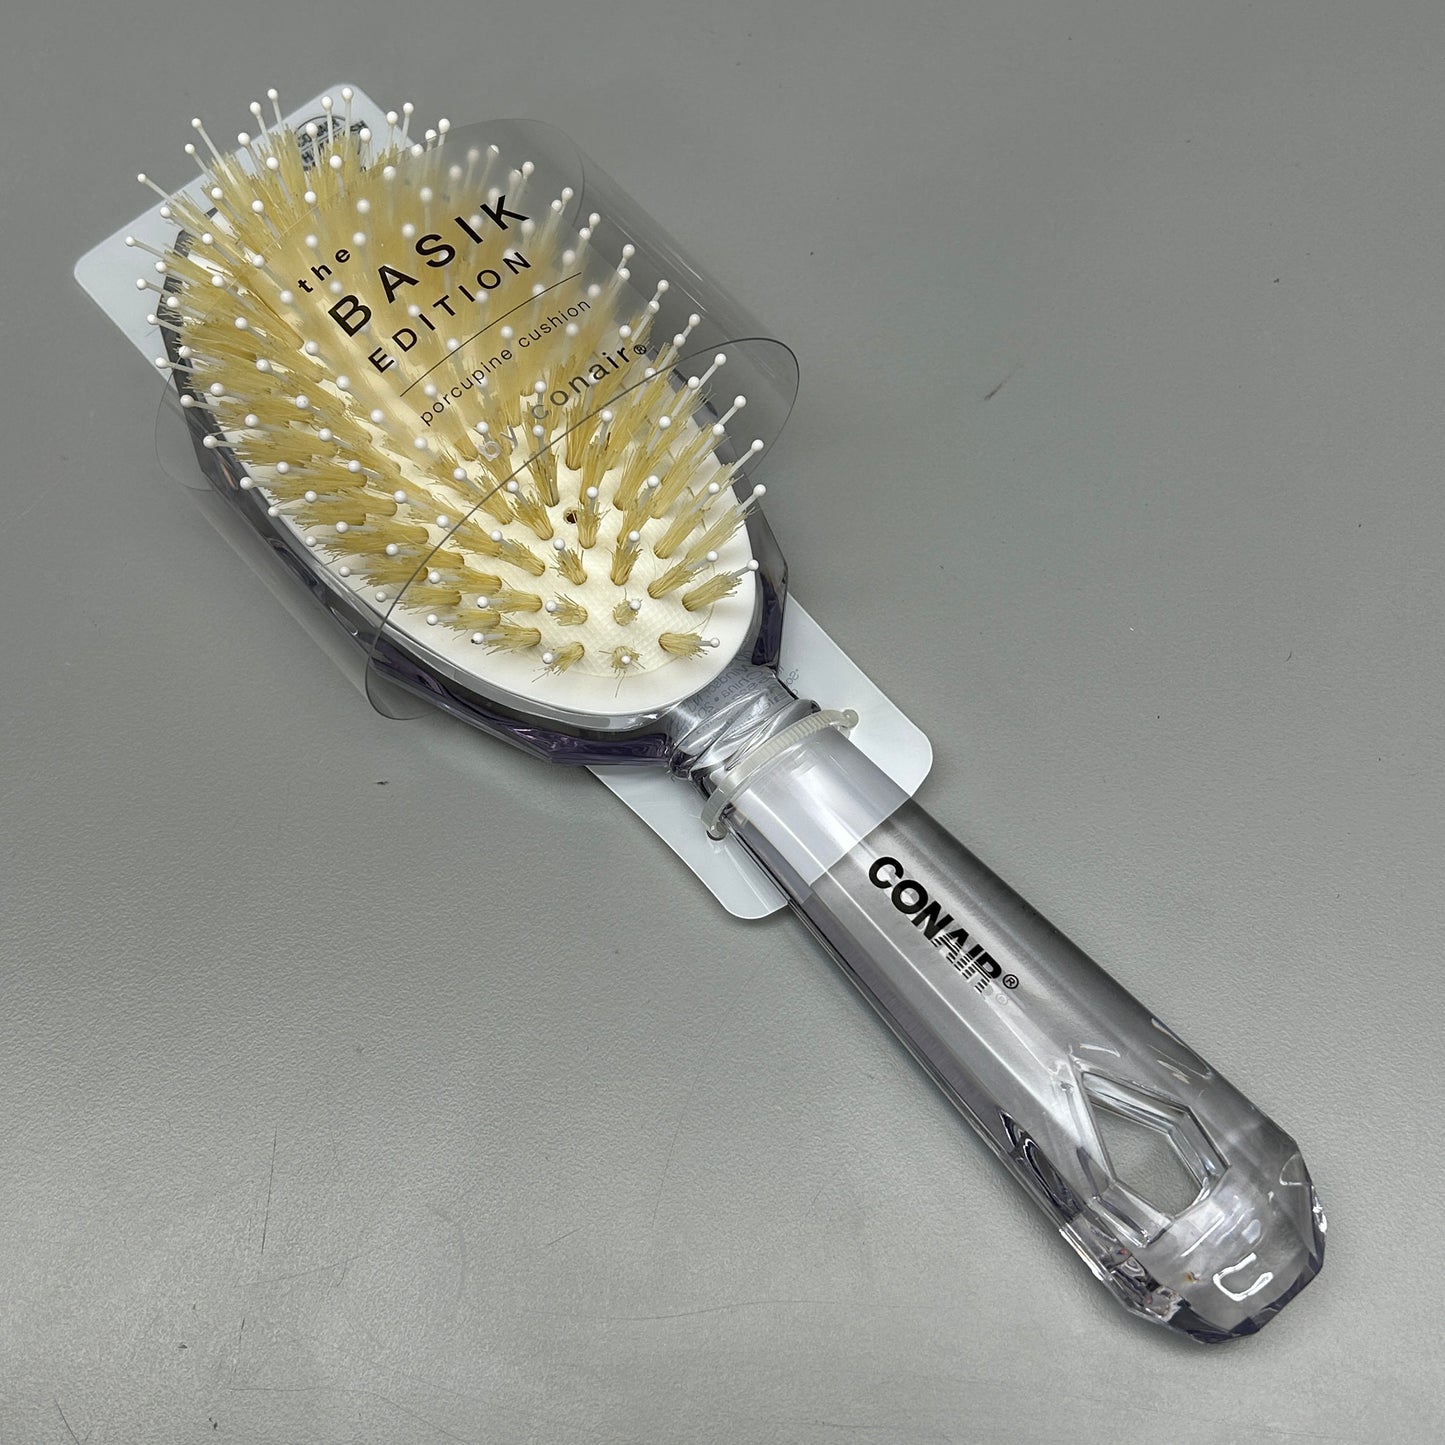 CONAIR 3-PACK! The Basik Edition Porcupine Cushion Hair Brush (New)